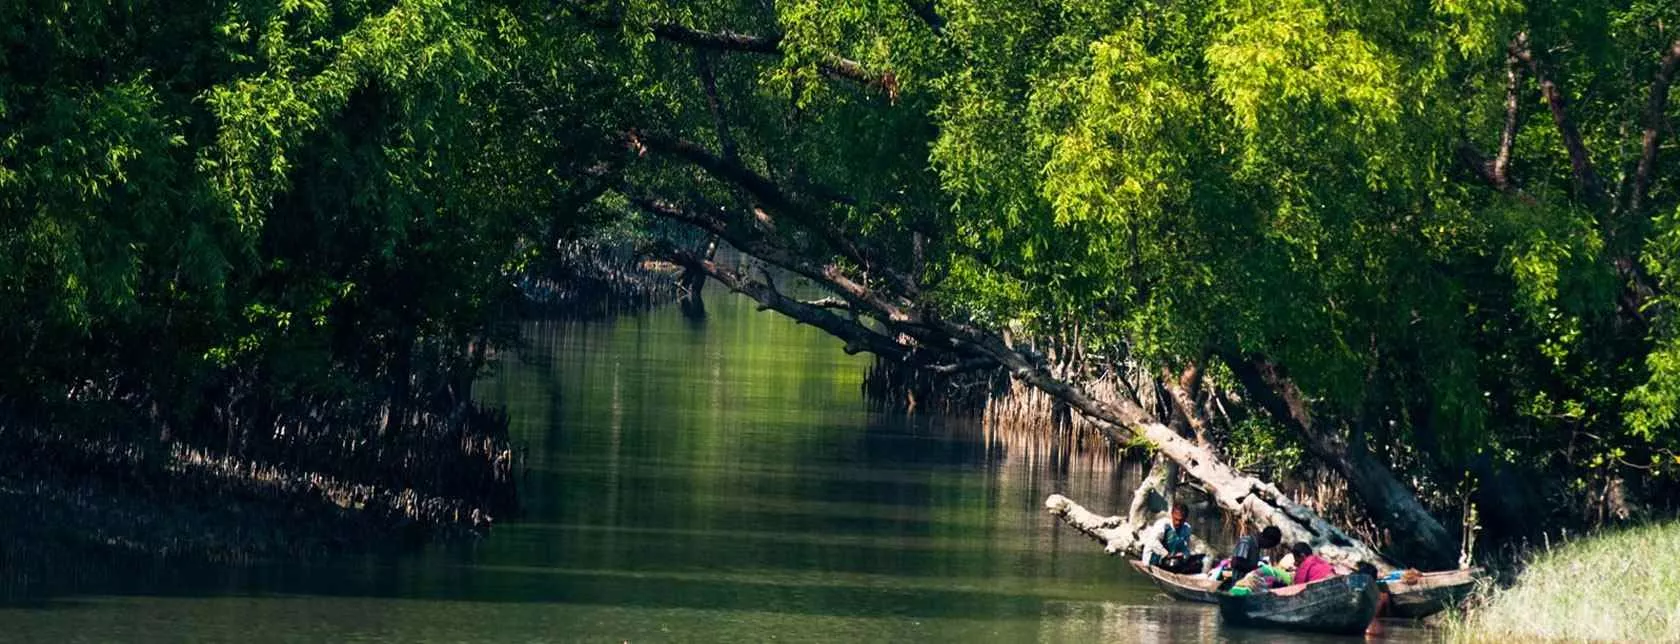 Best Sundarban Tour Package from Delhi 